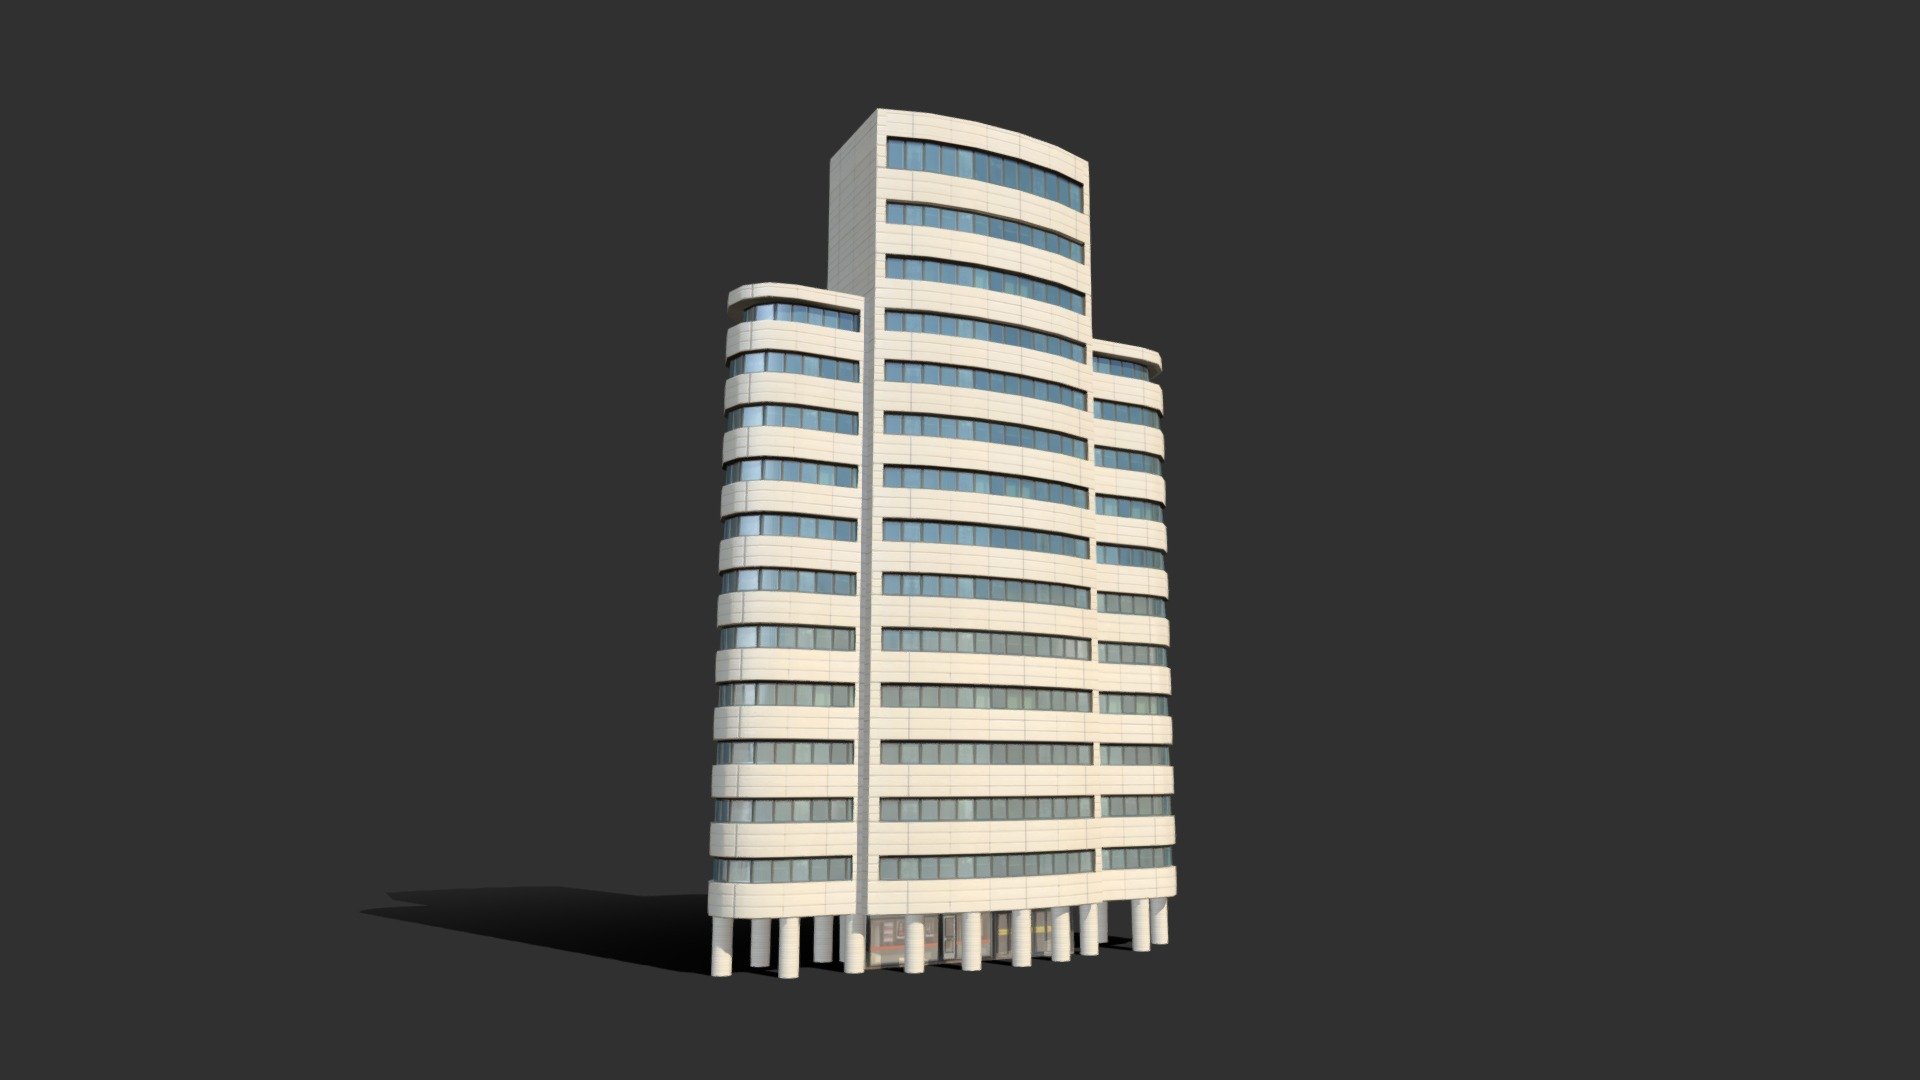 Lop Poly 3d model - Skyscraper4 - Buy Royalty Free 3D model by danielmikulik 3d model